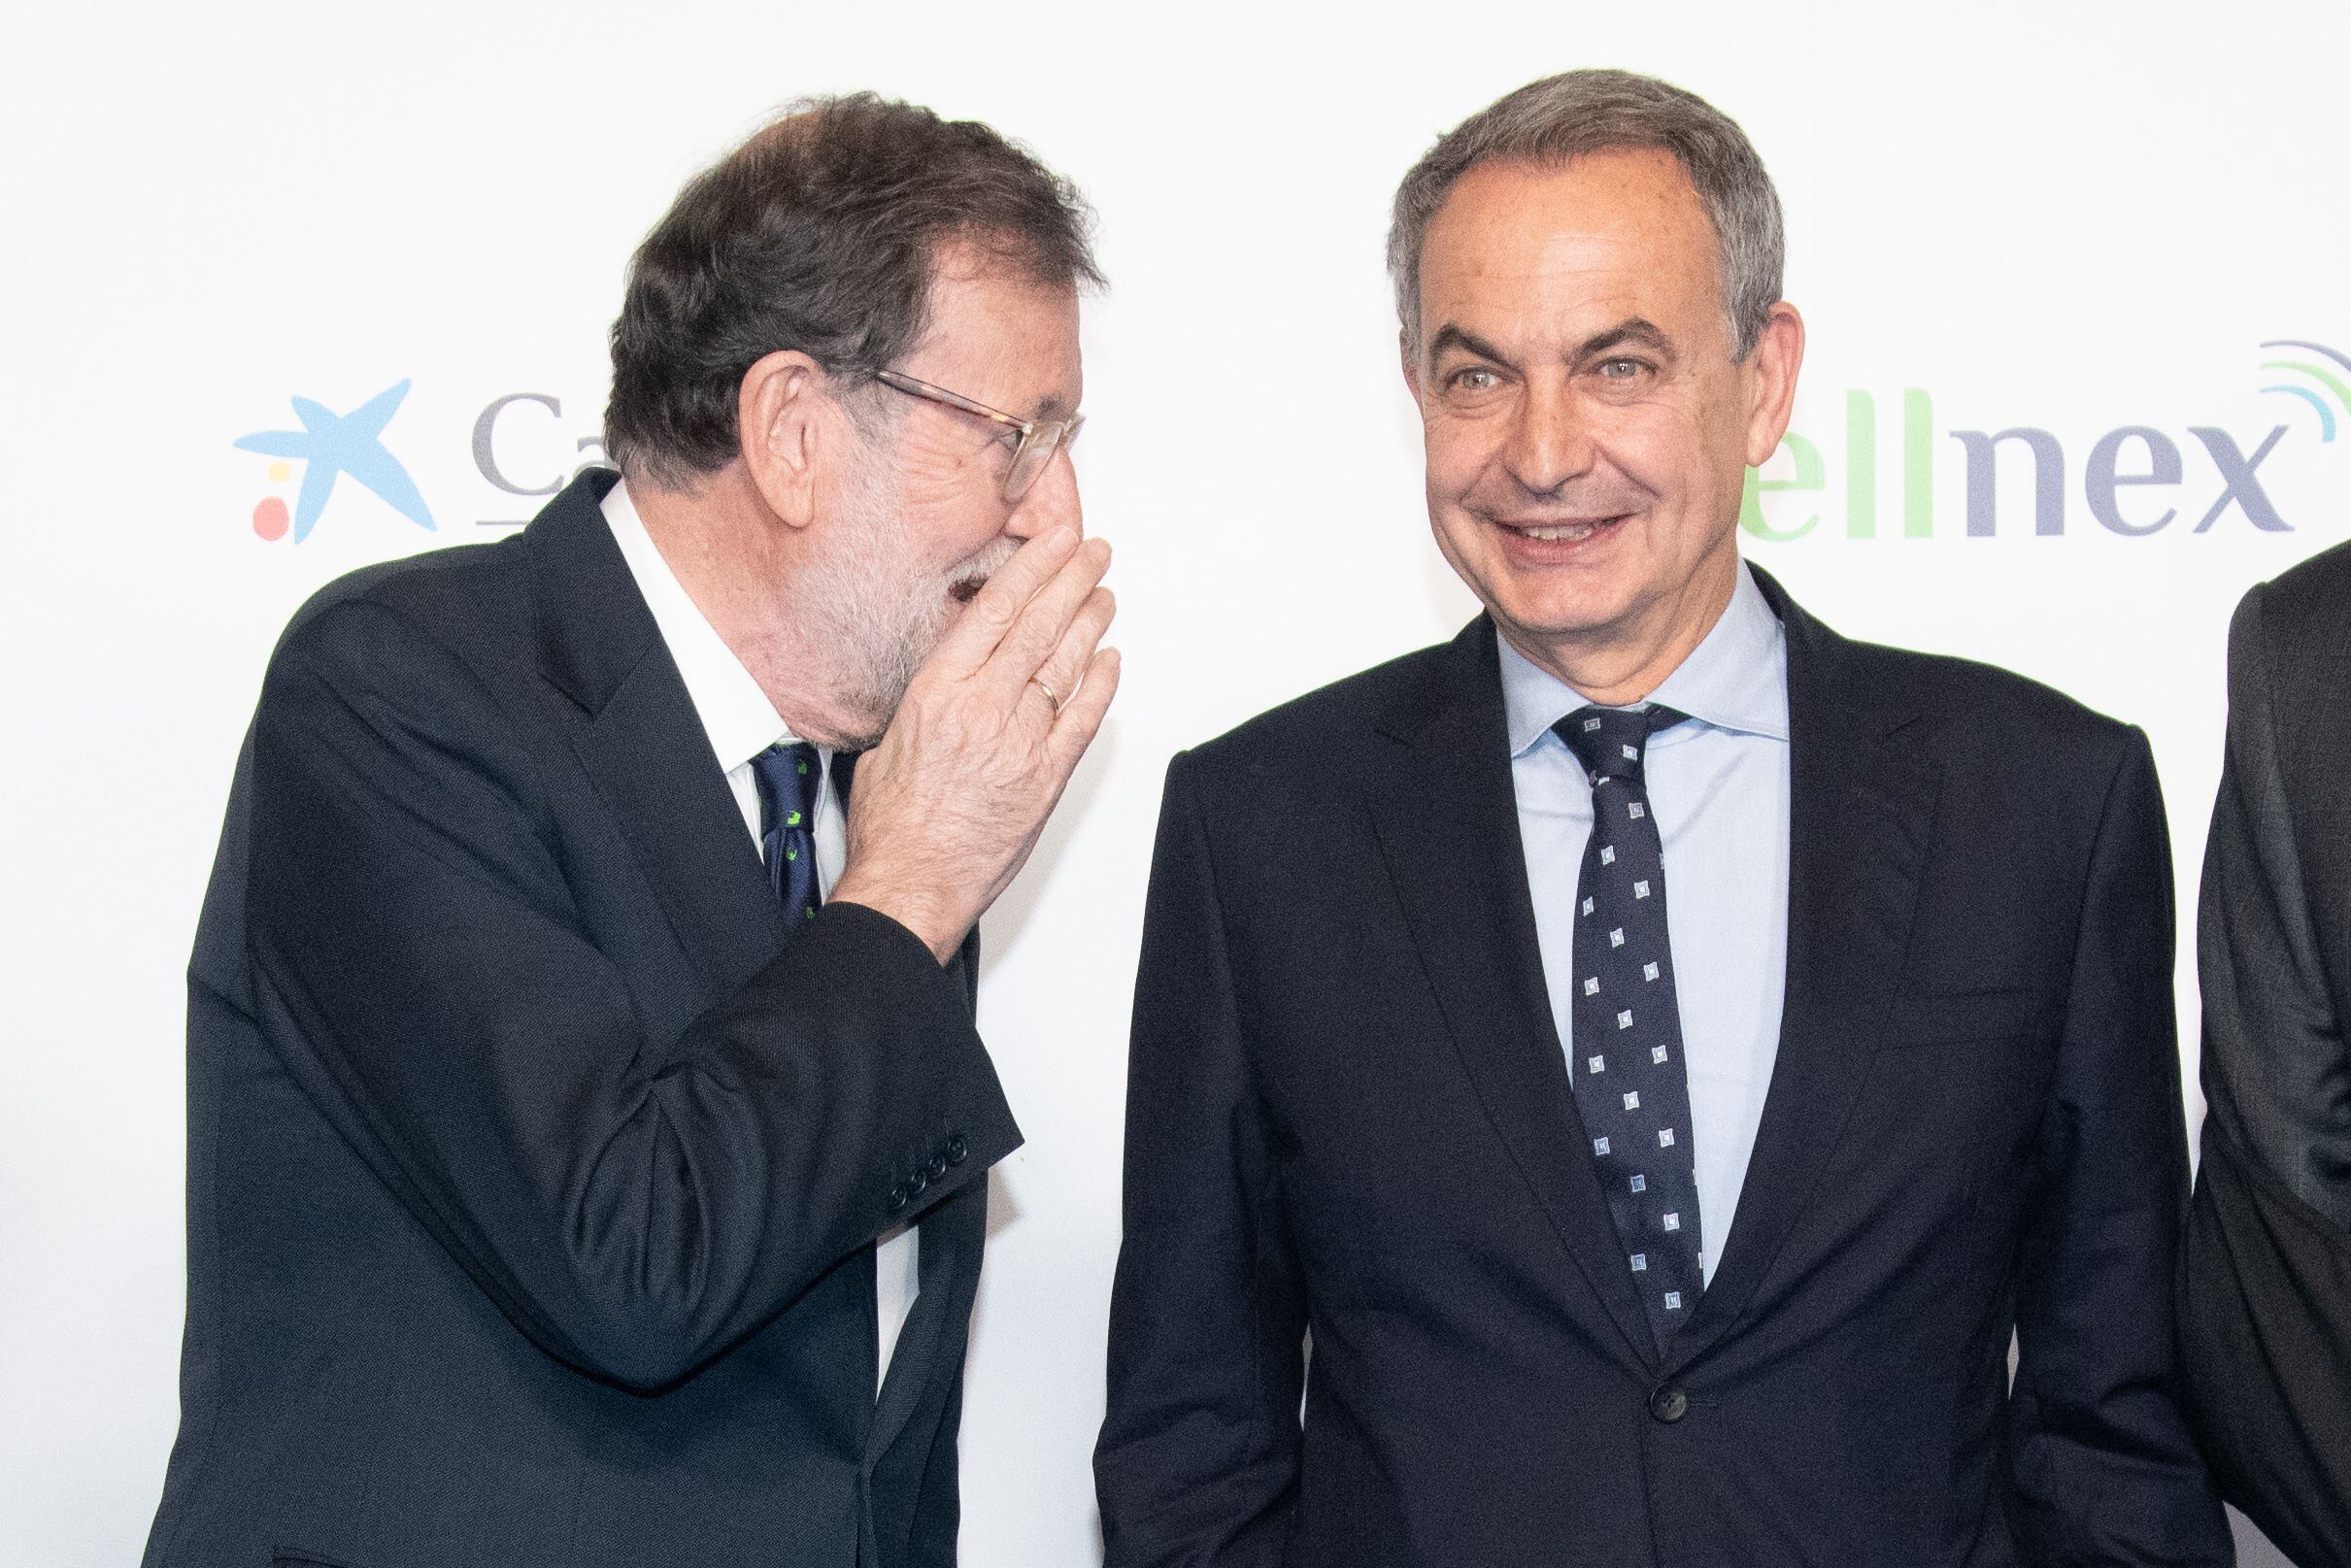 Mariano Rajoy y José Luis Rodríguez Zapatero, en un acto en Madrid. (José Oliva/Europa Press)